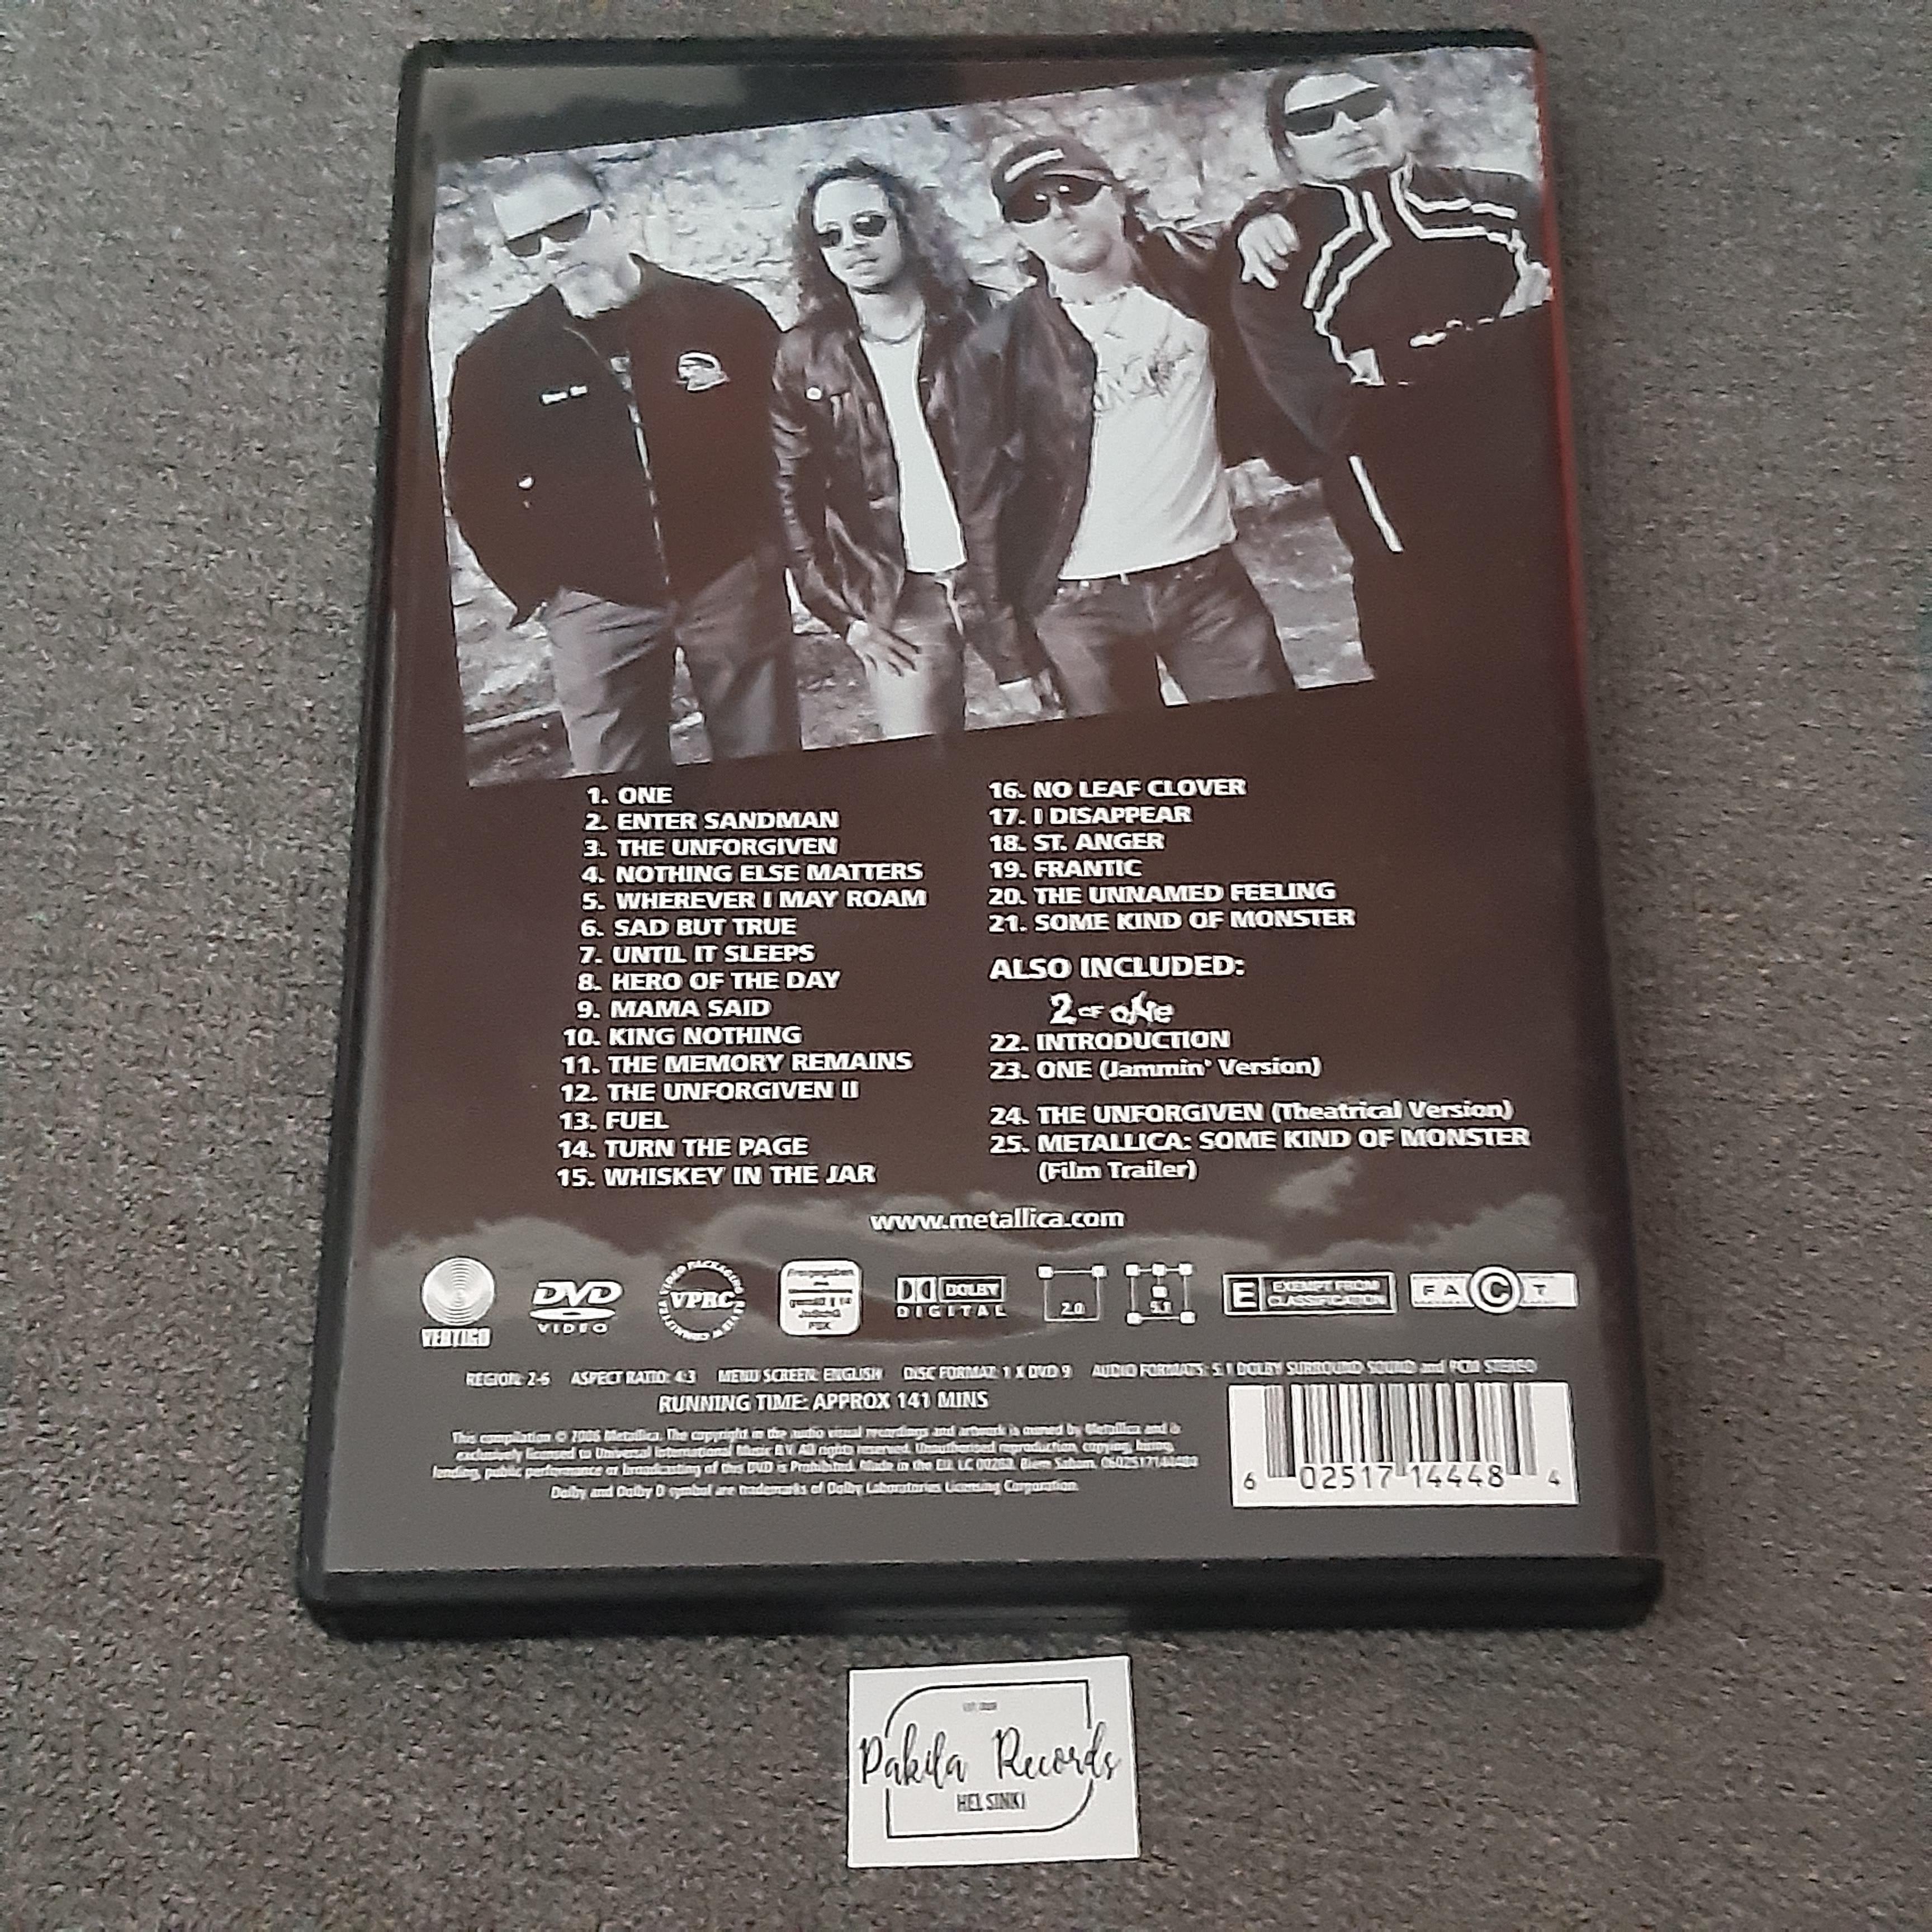 Metallica - The Videos 1989-2004 - DVD (käytetty)